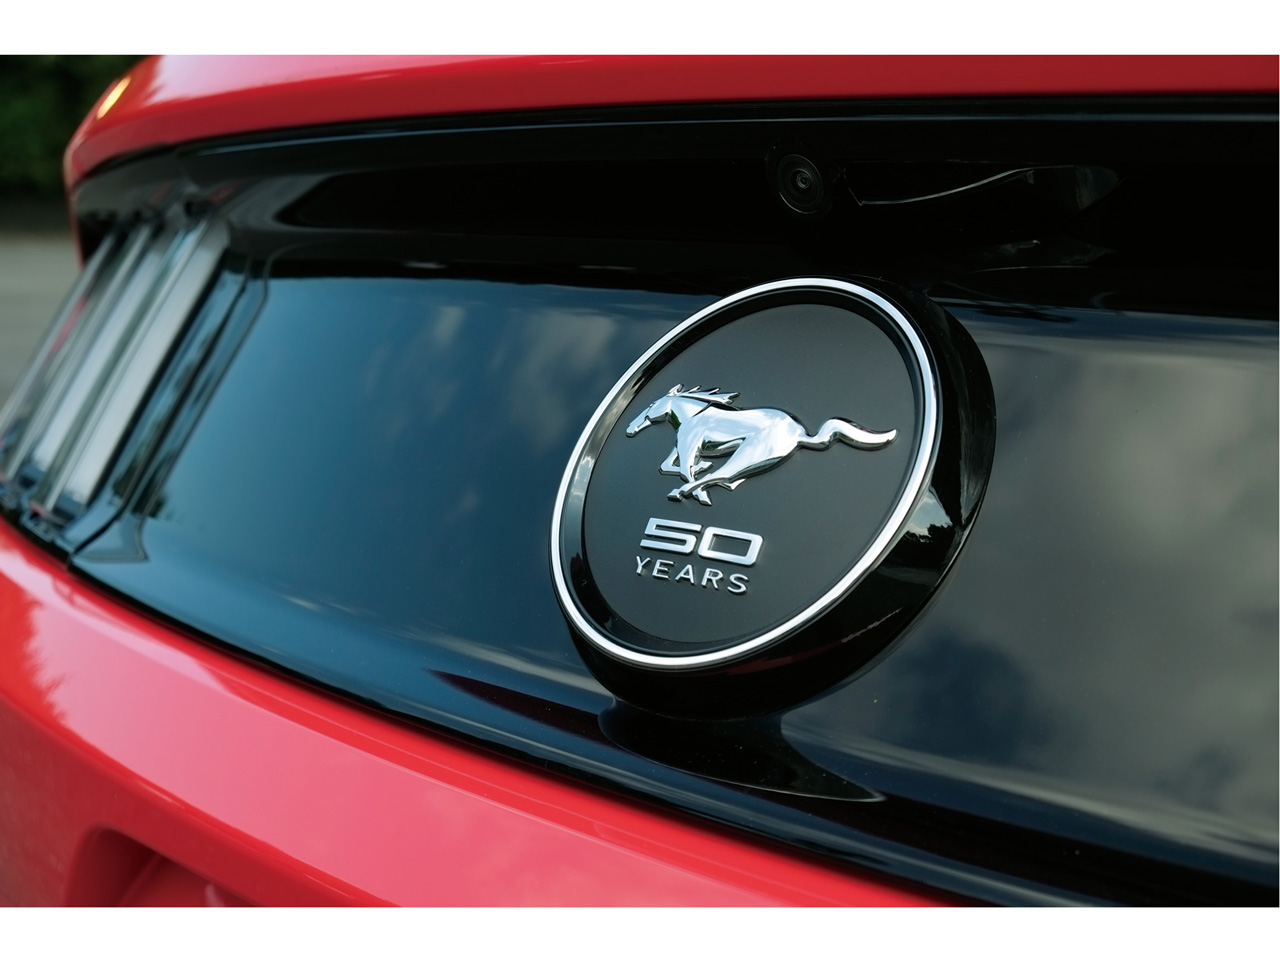 フォード マスタング 15年モデル 50 Years Editionの価格 性能 装備 オプション 15年4月1日発売 価格 Com